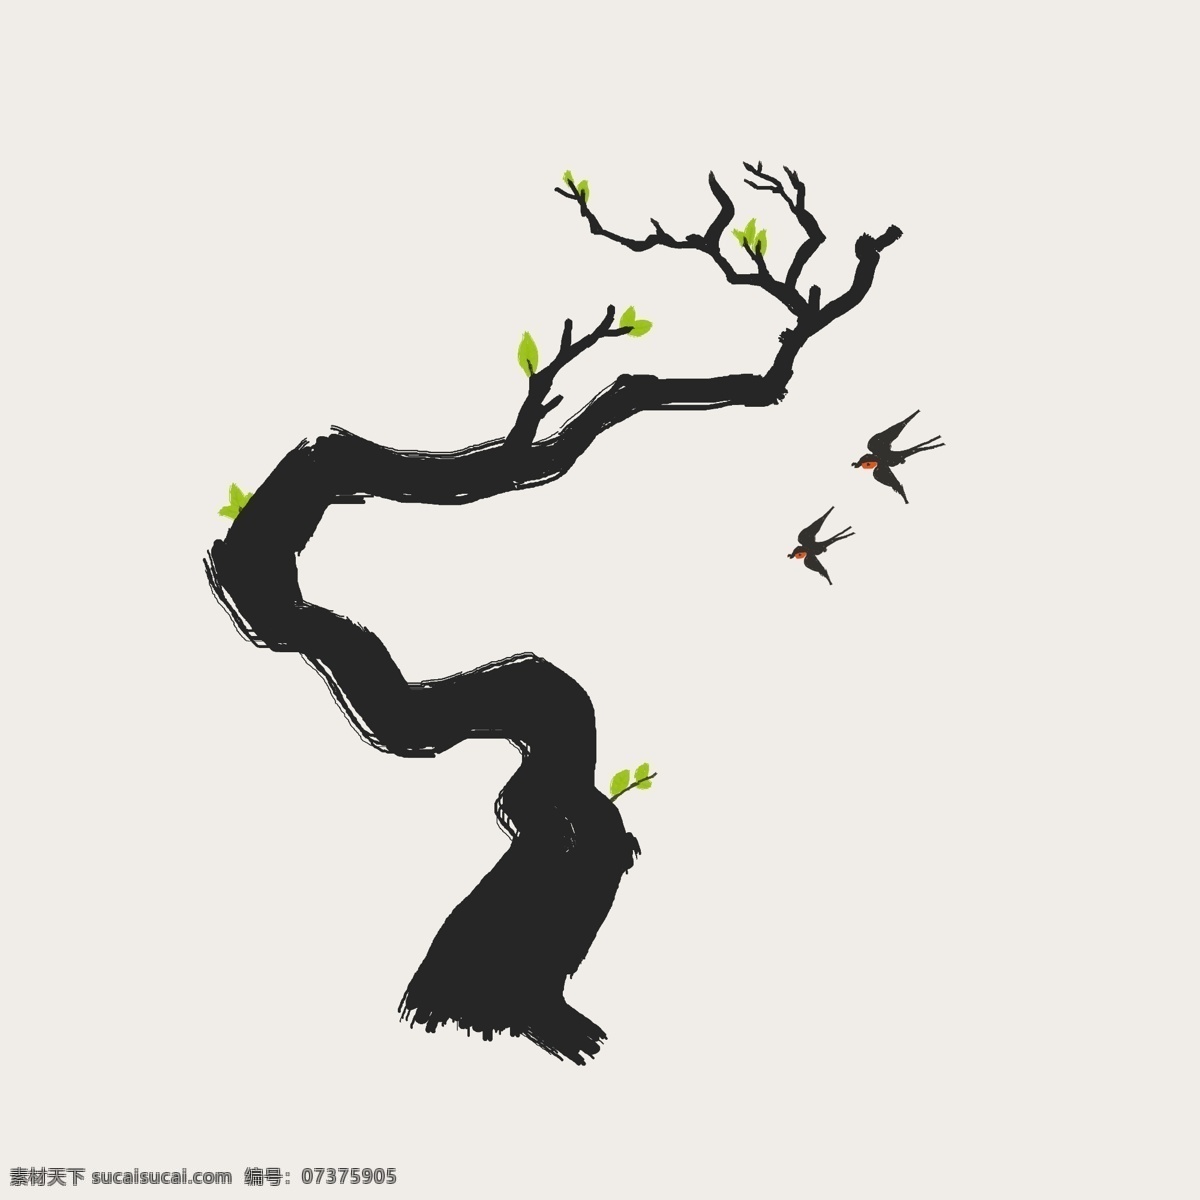 古树 绿叶 发芽 手绘 插画 燕子 包装设计